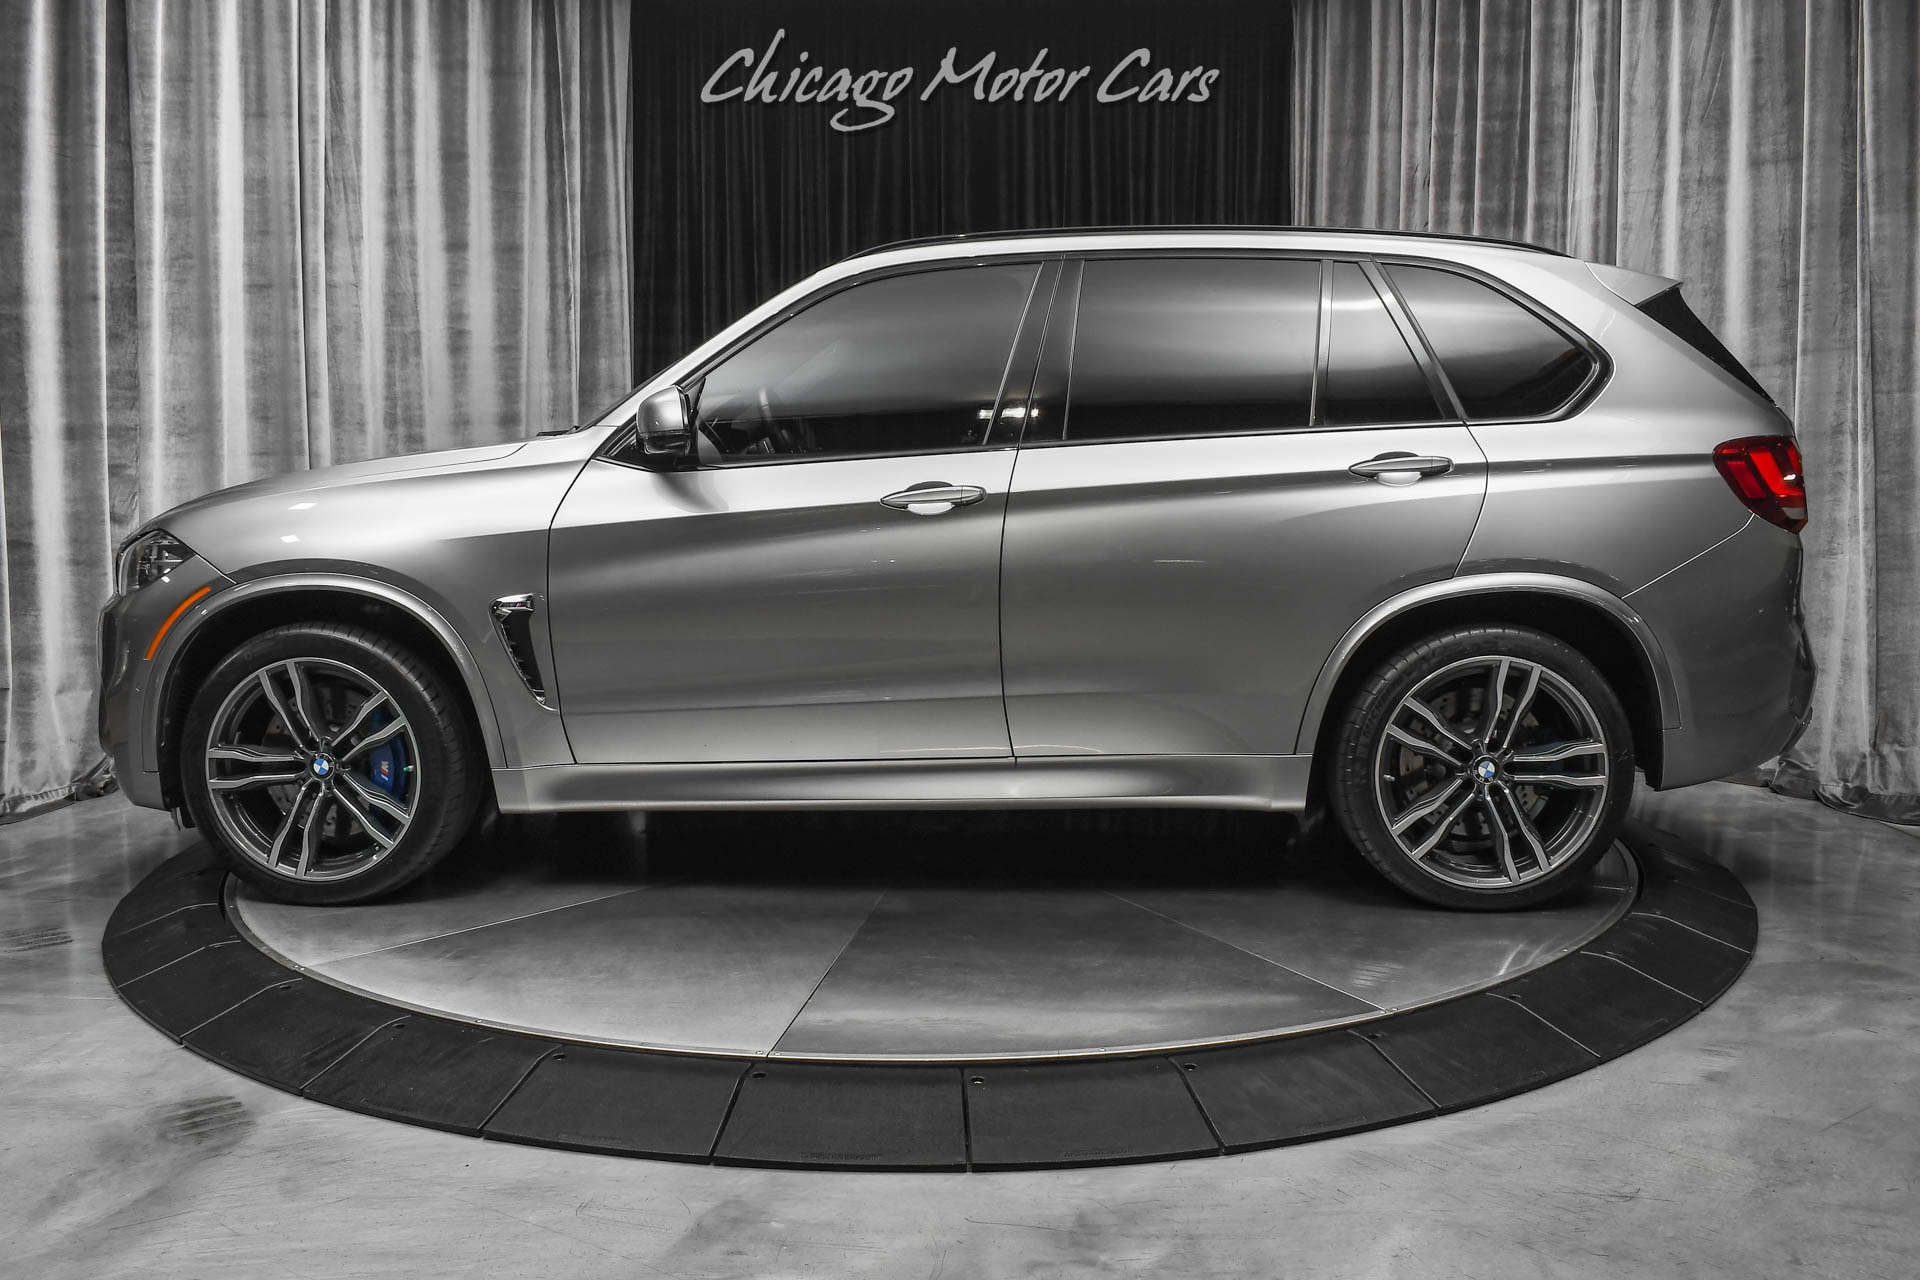 Used-2018-BMW-X5-M-SUV-Executive-Pkg-Night-Vision-Pedestrian-Detection-Carbon-Fiber-Trim